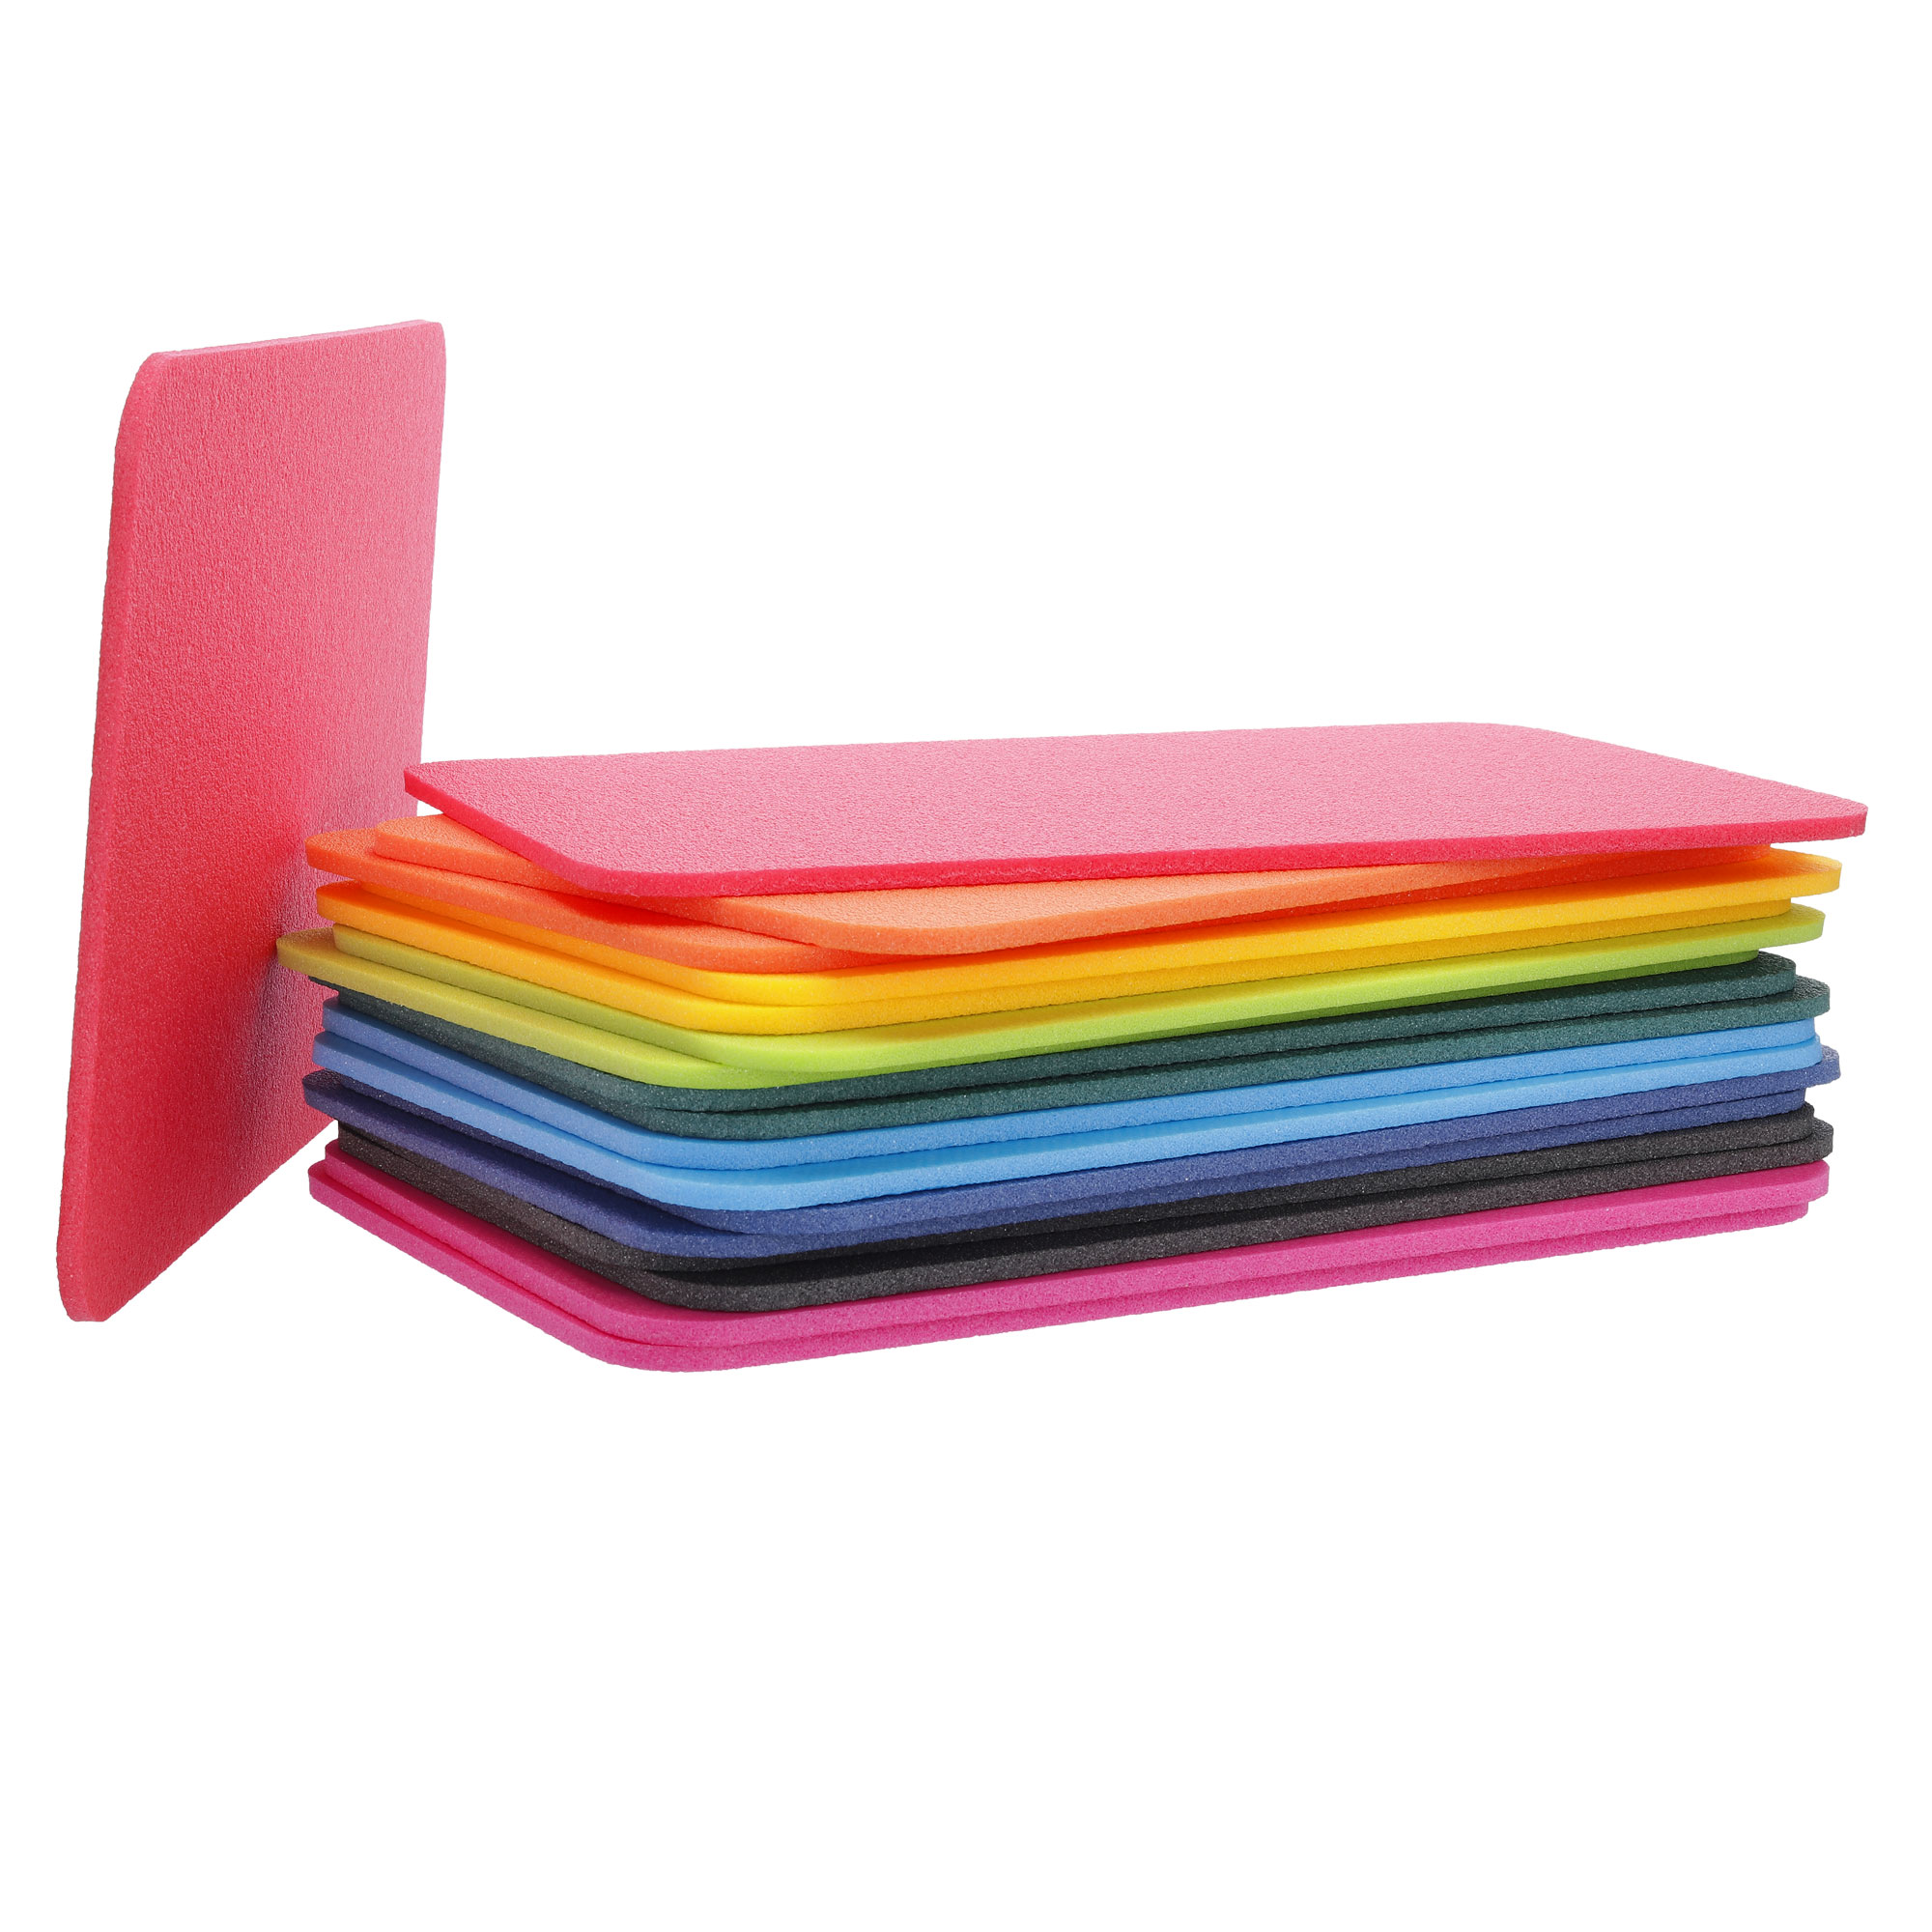 Yate Schaumstoff Sitzkissen in Regenbogenfarben viereckig ohne Griff